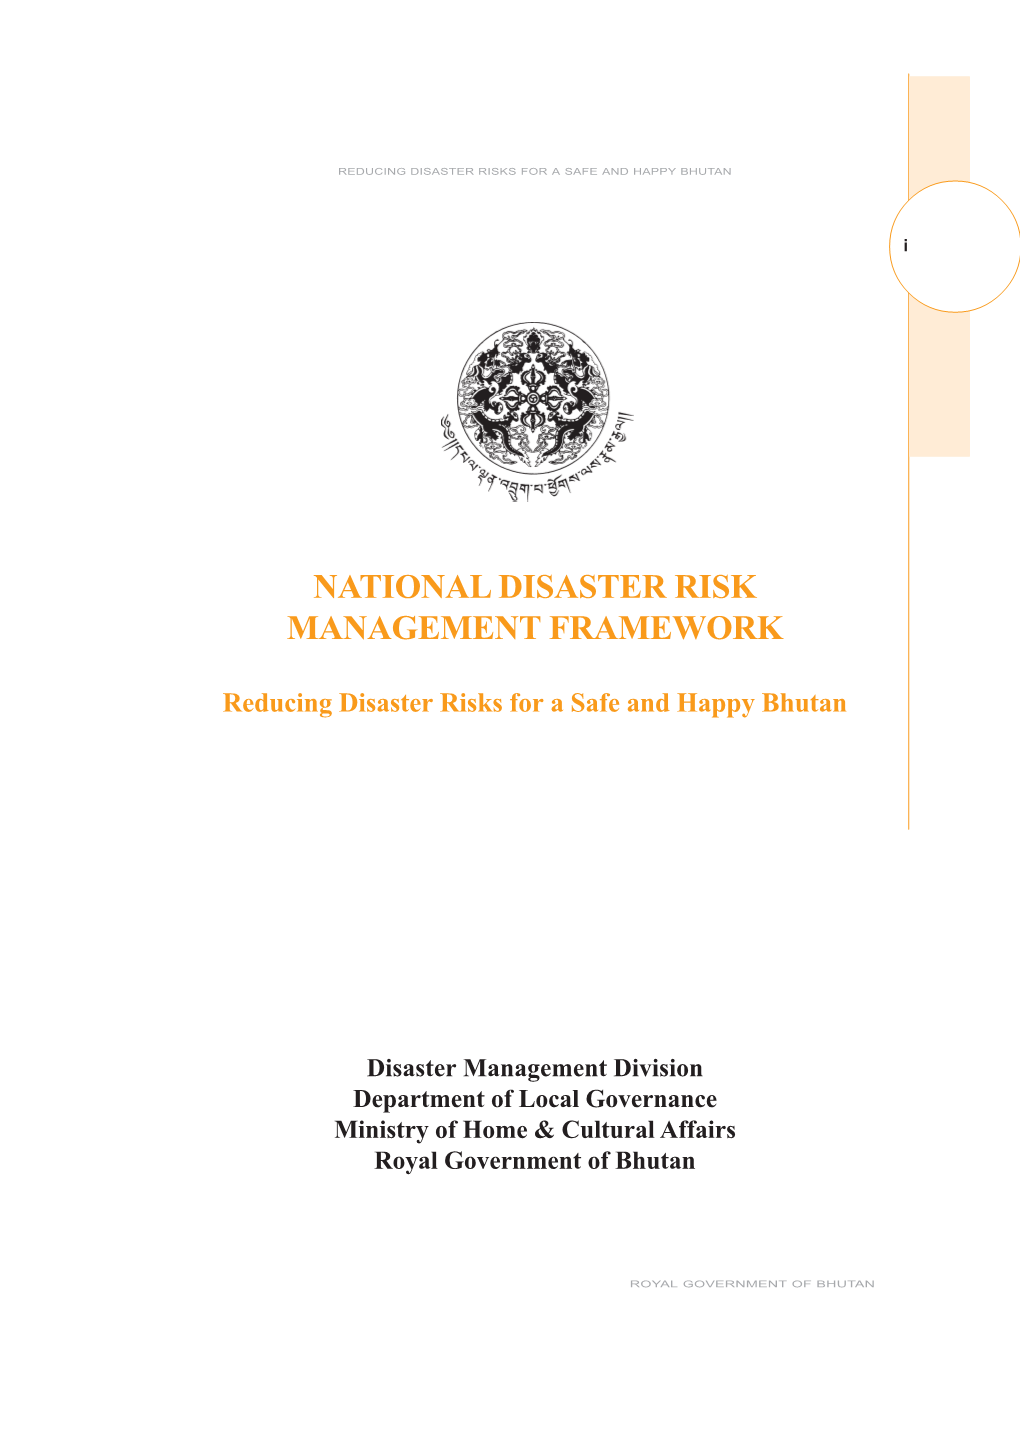 National Disaster Risk Management Framework